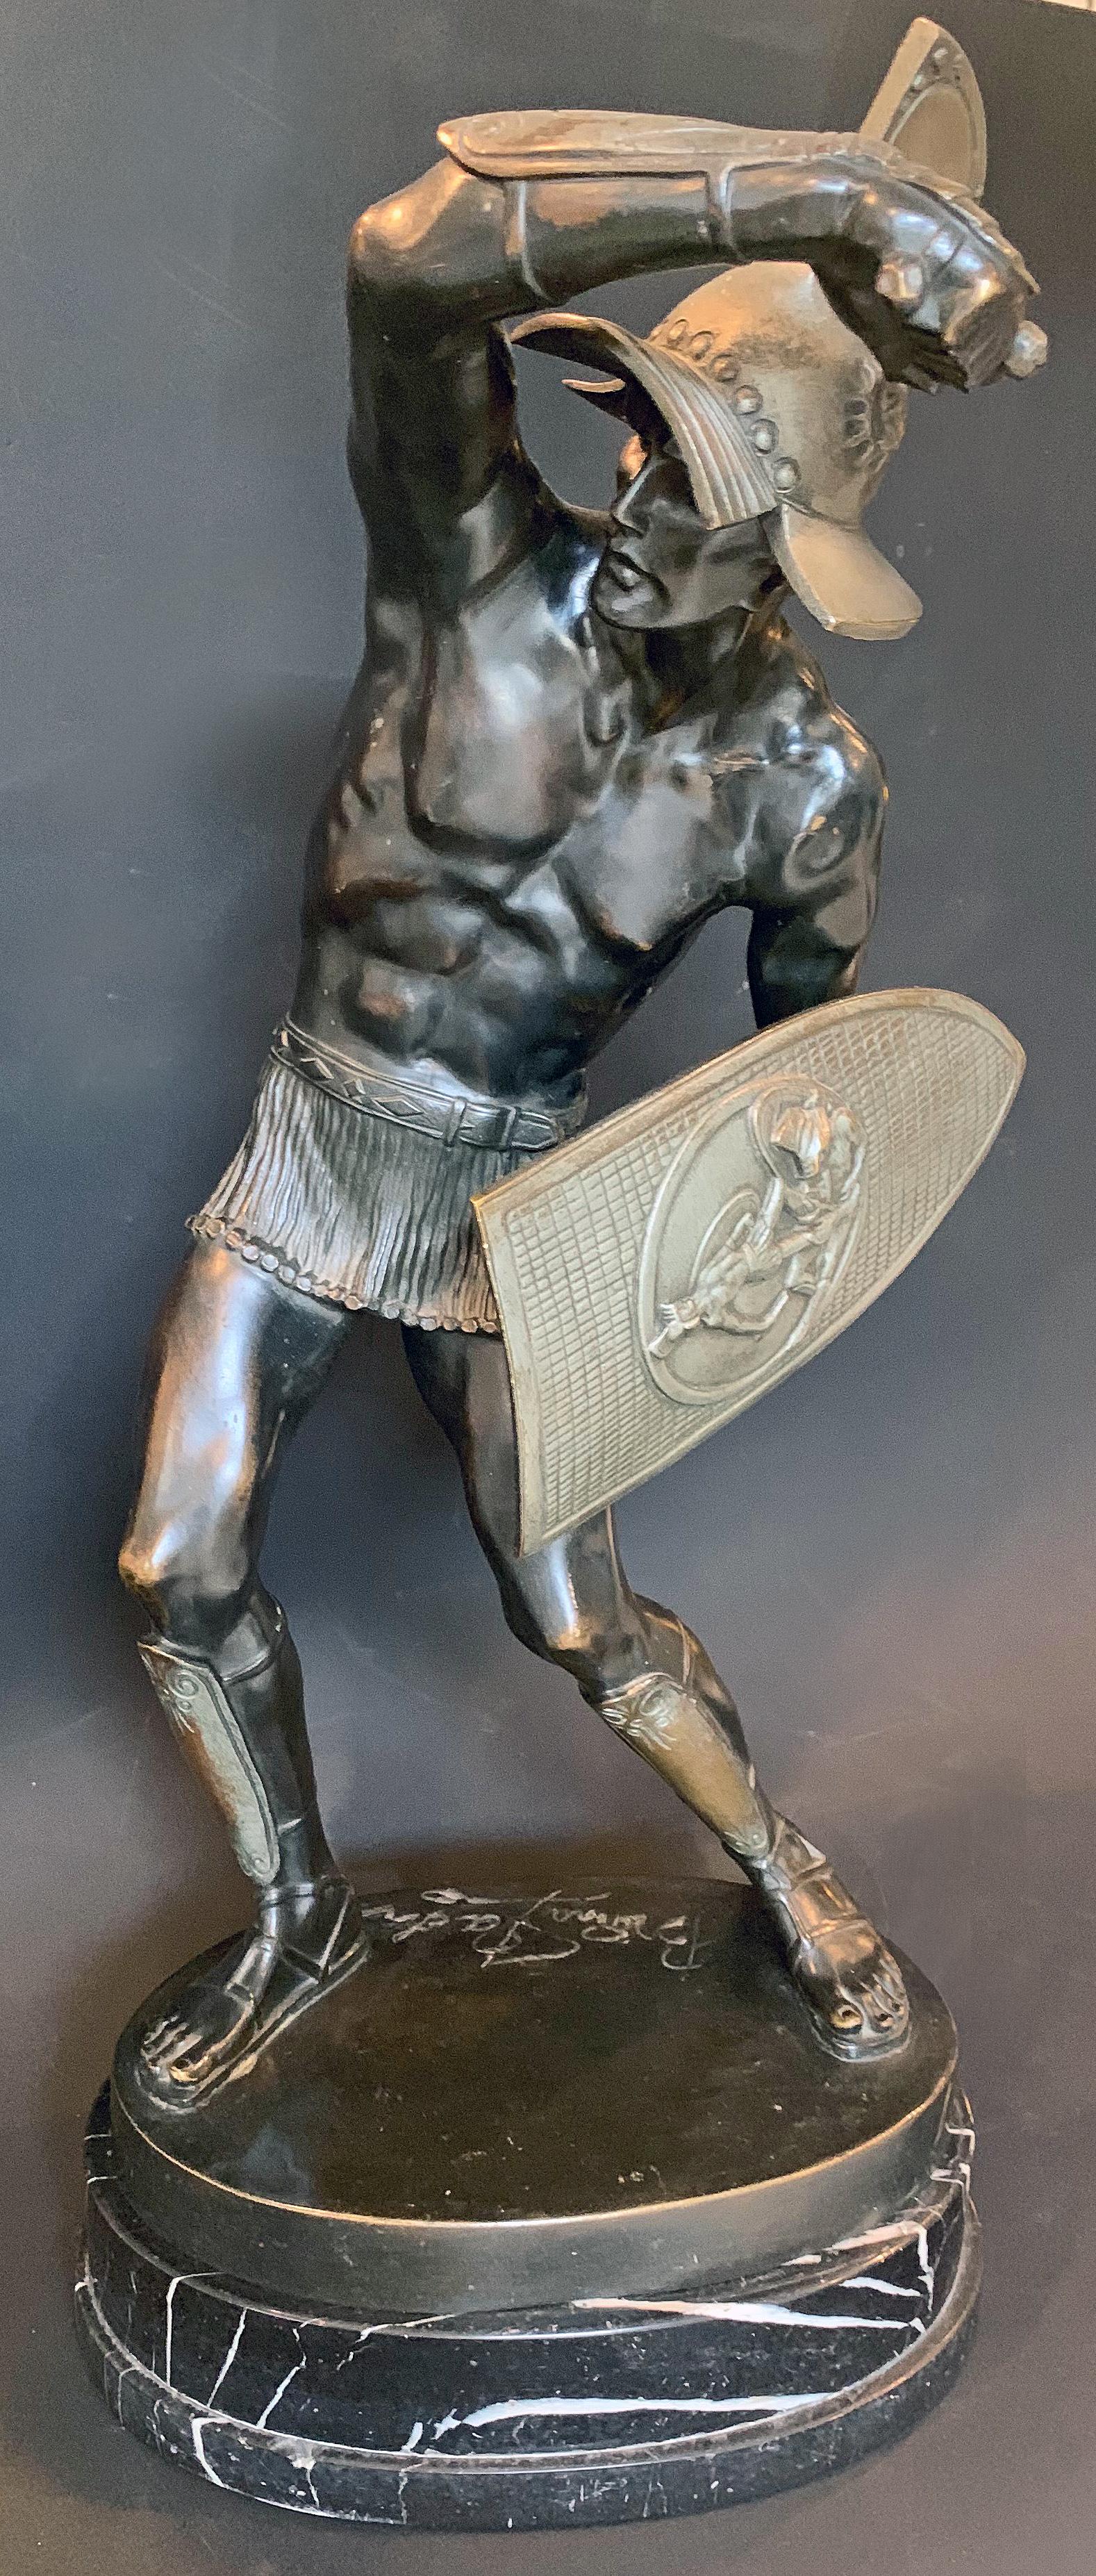 Premier exemple de cette sculpture que nous ayons vu, cette représentation saisissante d'un gladiateur masculin - vêtu uniquement d'une courte jupe en cotte de mailles - est montrée en plein combat, un bras levé avec un poignard à la main, l'autre